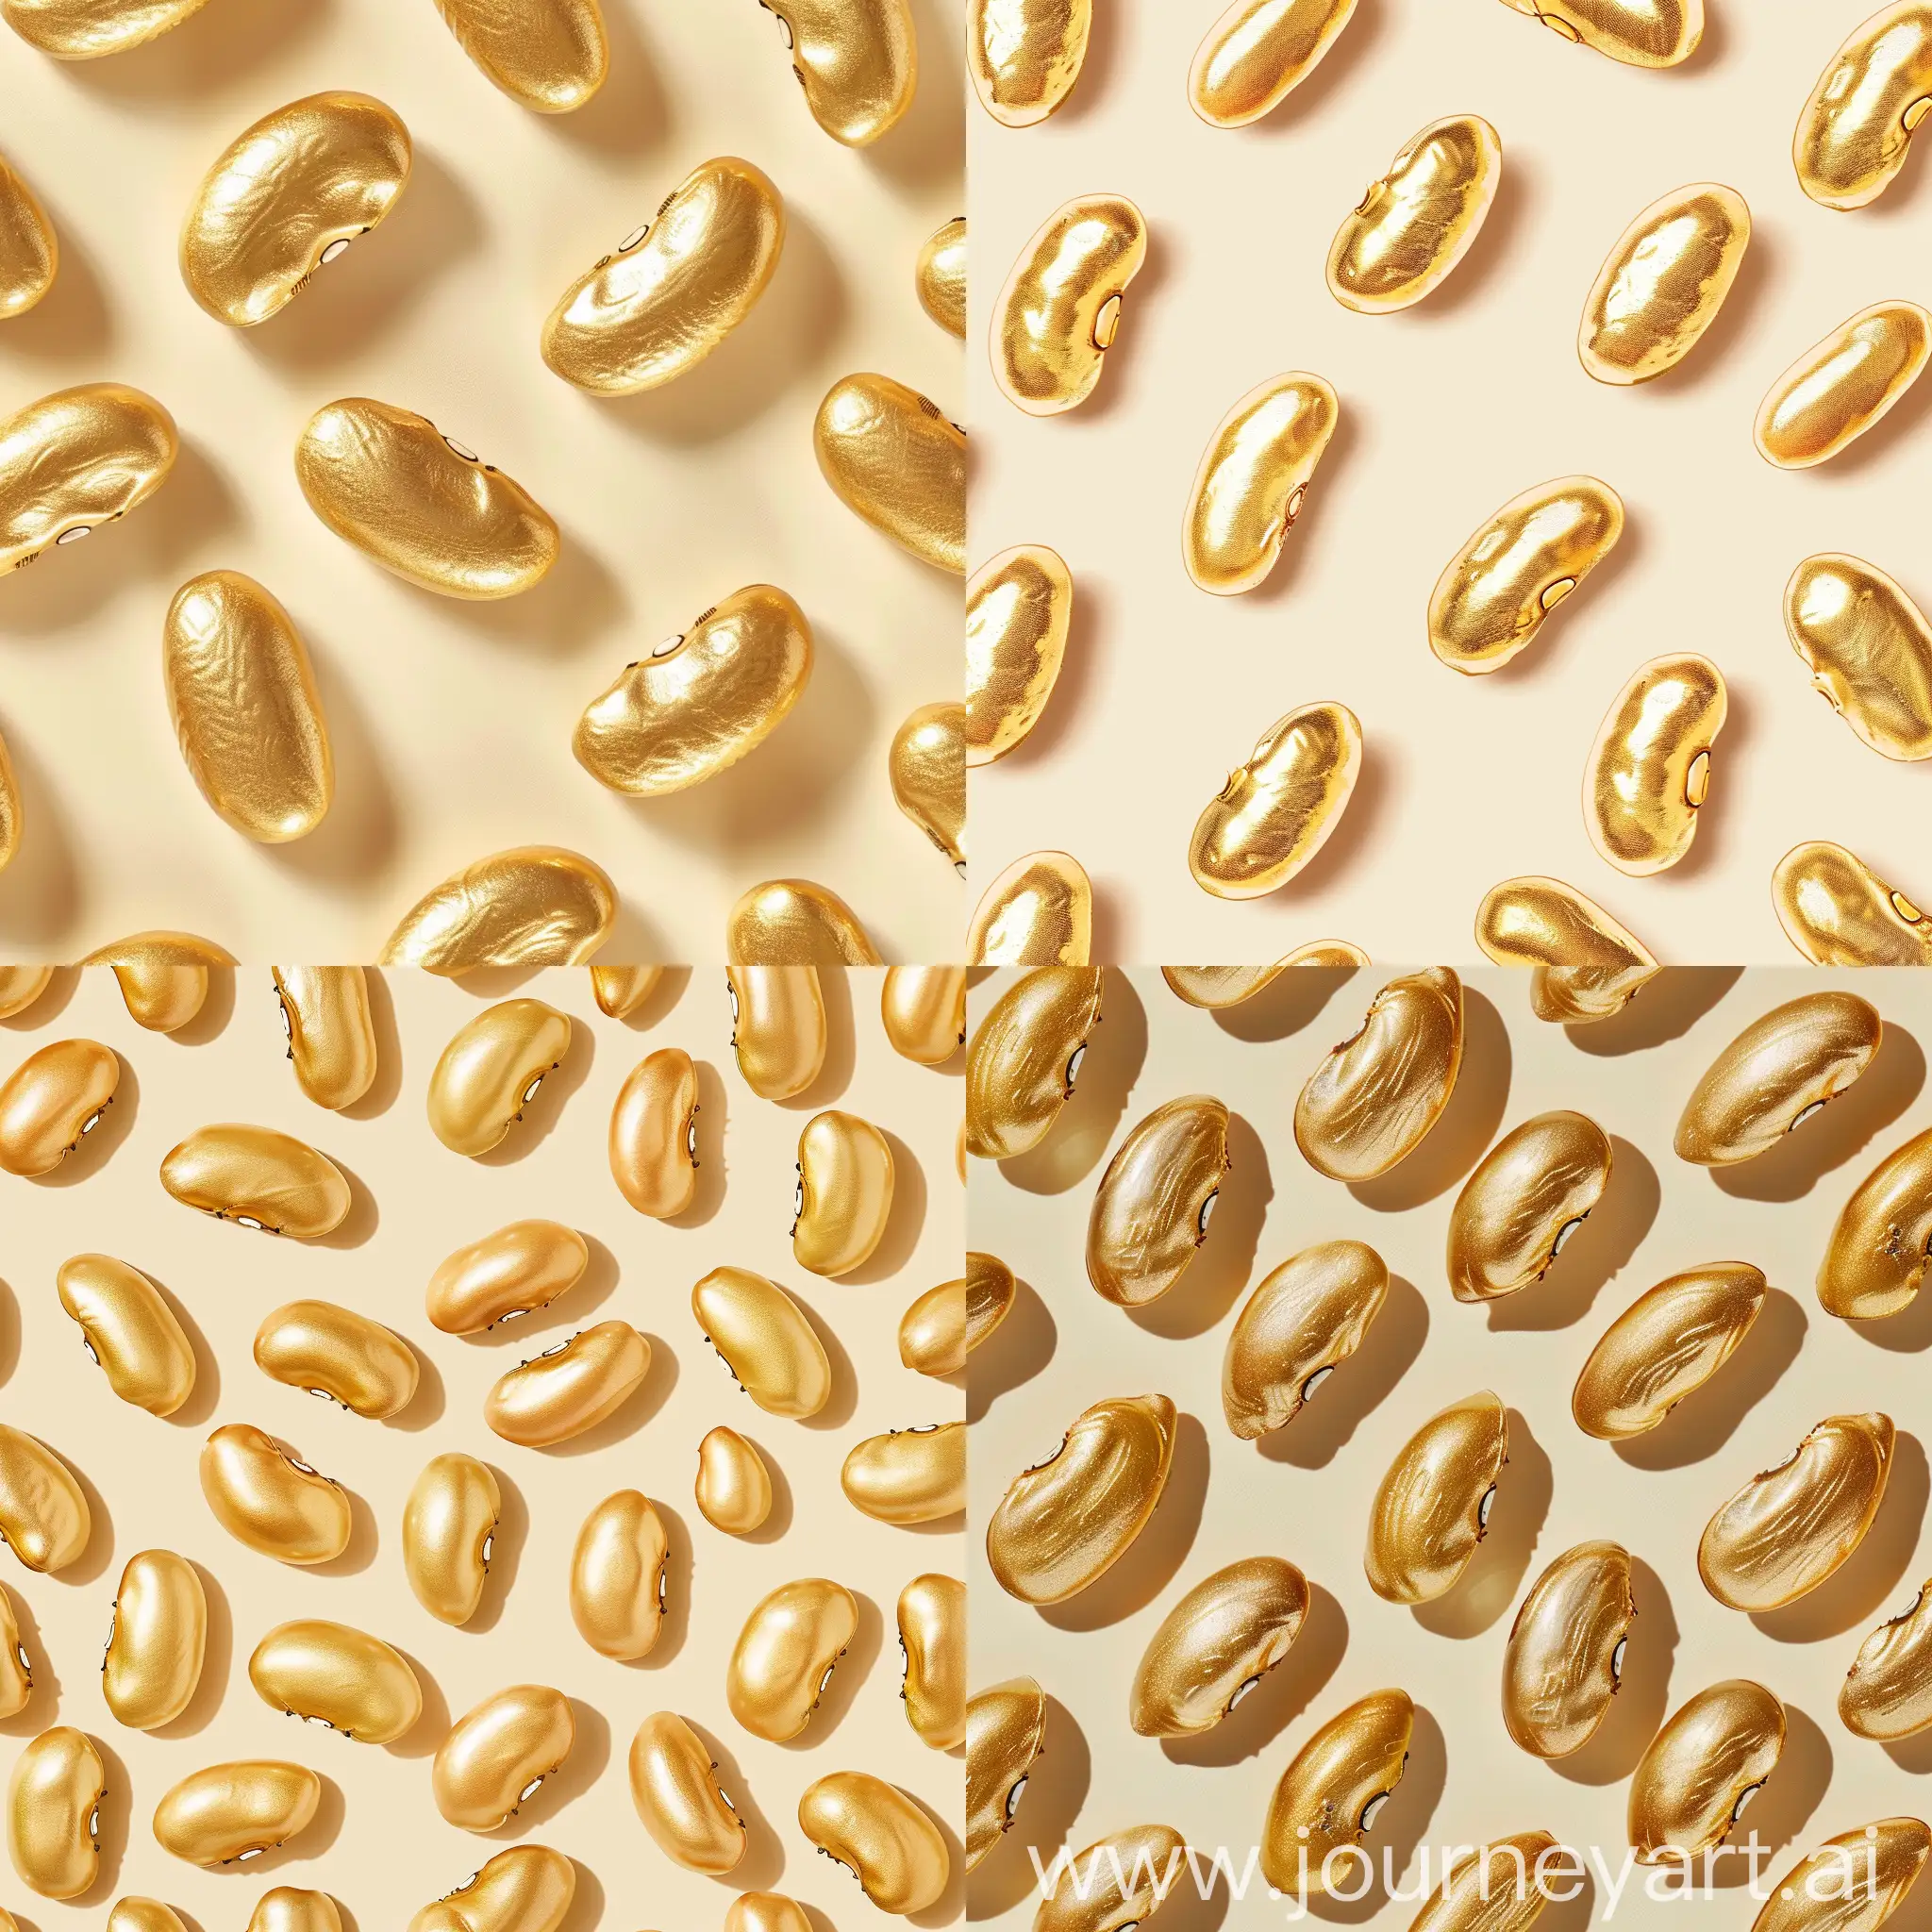 生成一张带有文字"金豆商品管理系统"的图片，带有金豆图案，浅色系风格